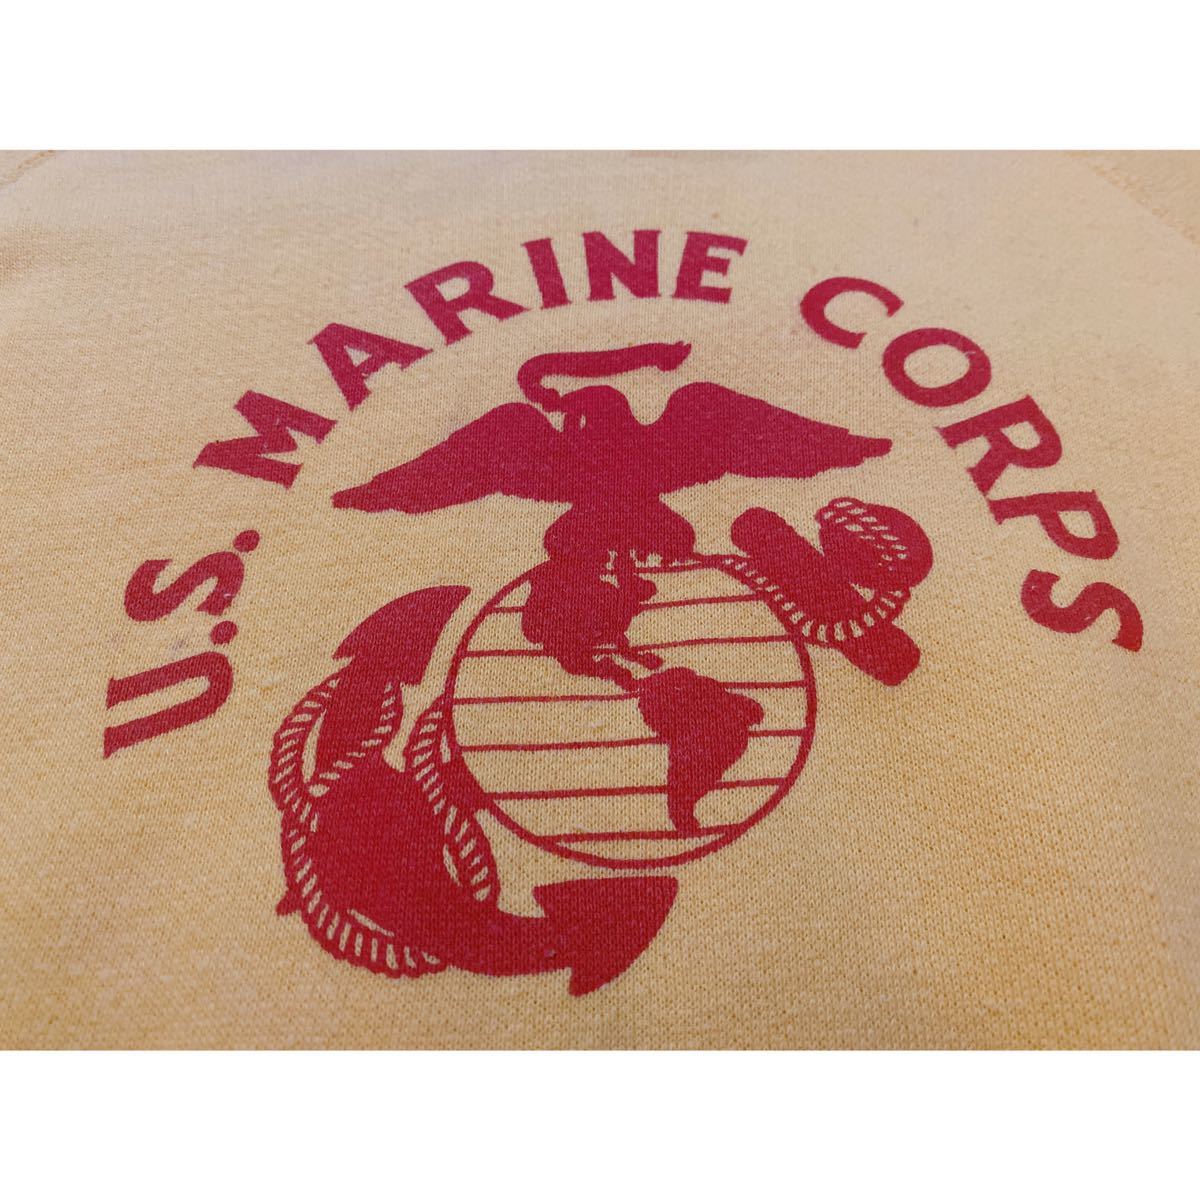 超希少&黄金サイズ!VTG 1950’s U.S.MARINE CORPS SWEAT SHIRTS WITH STENCIL XL USN US NAVYビンテージアメリカ海軍スウェット ステンシル_画像1